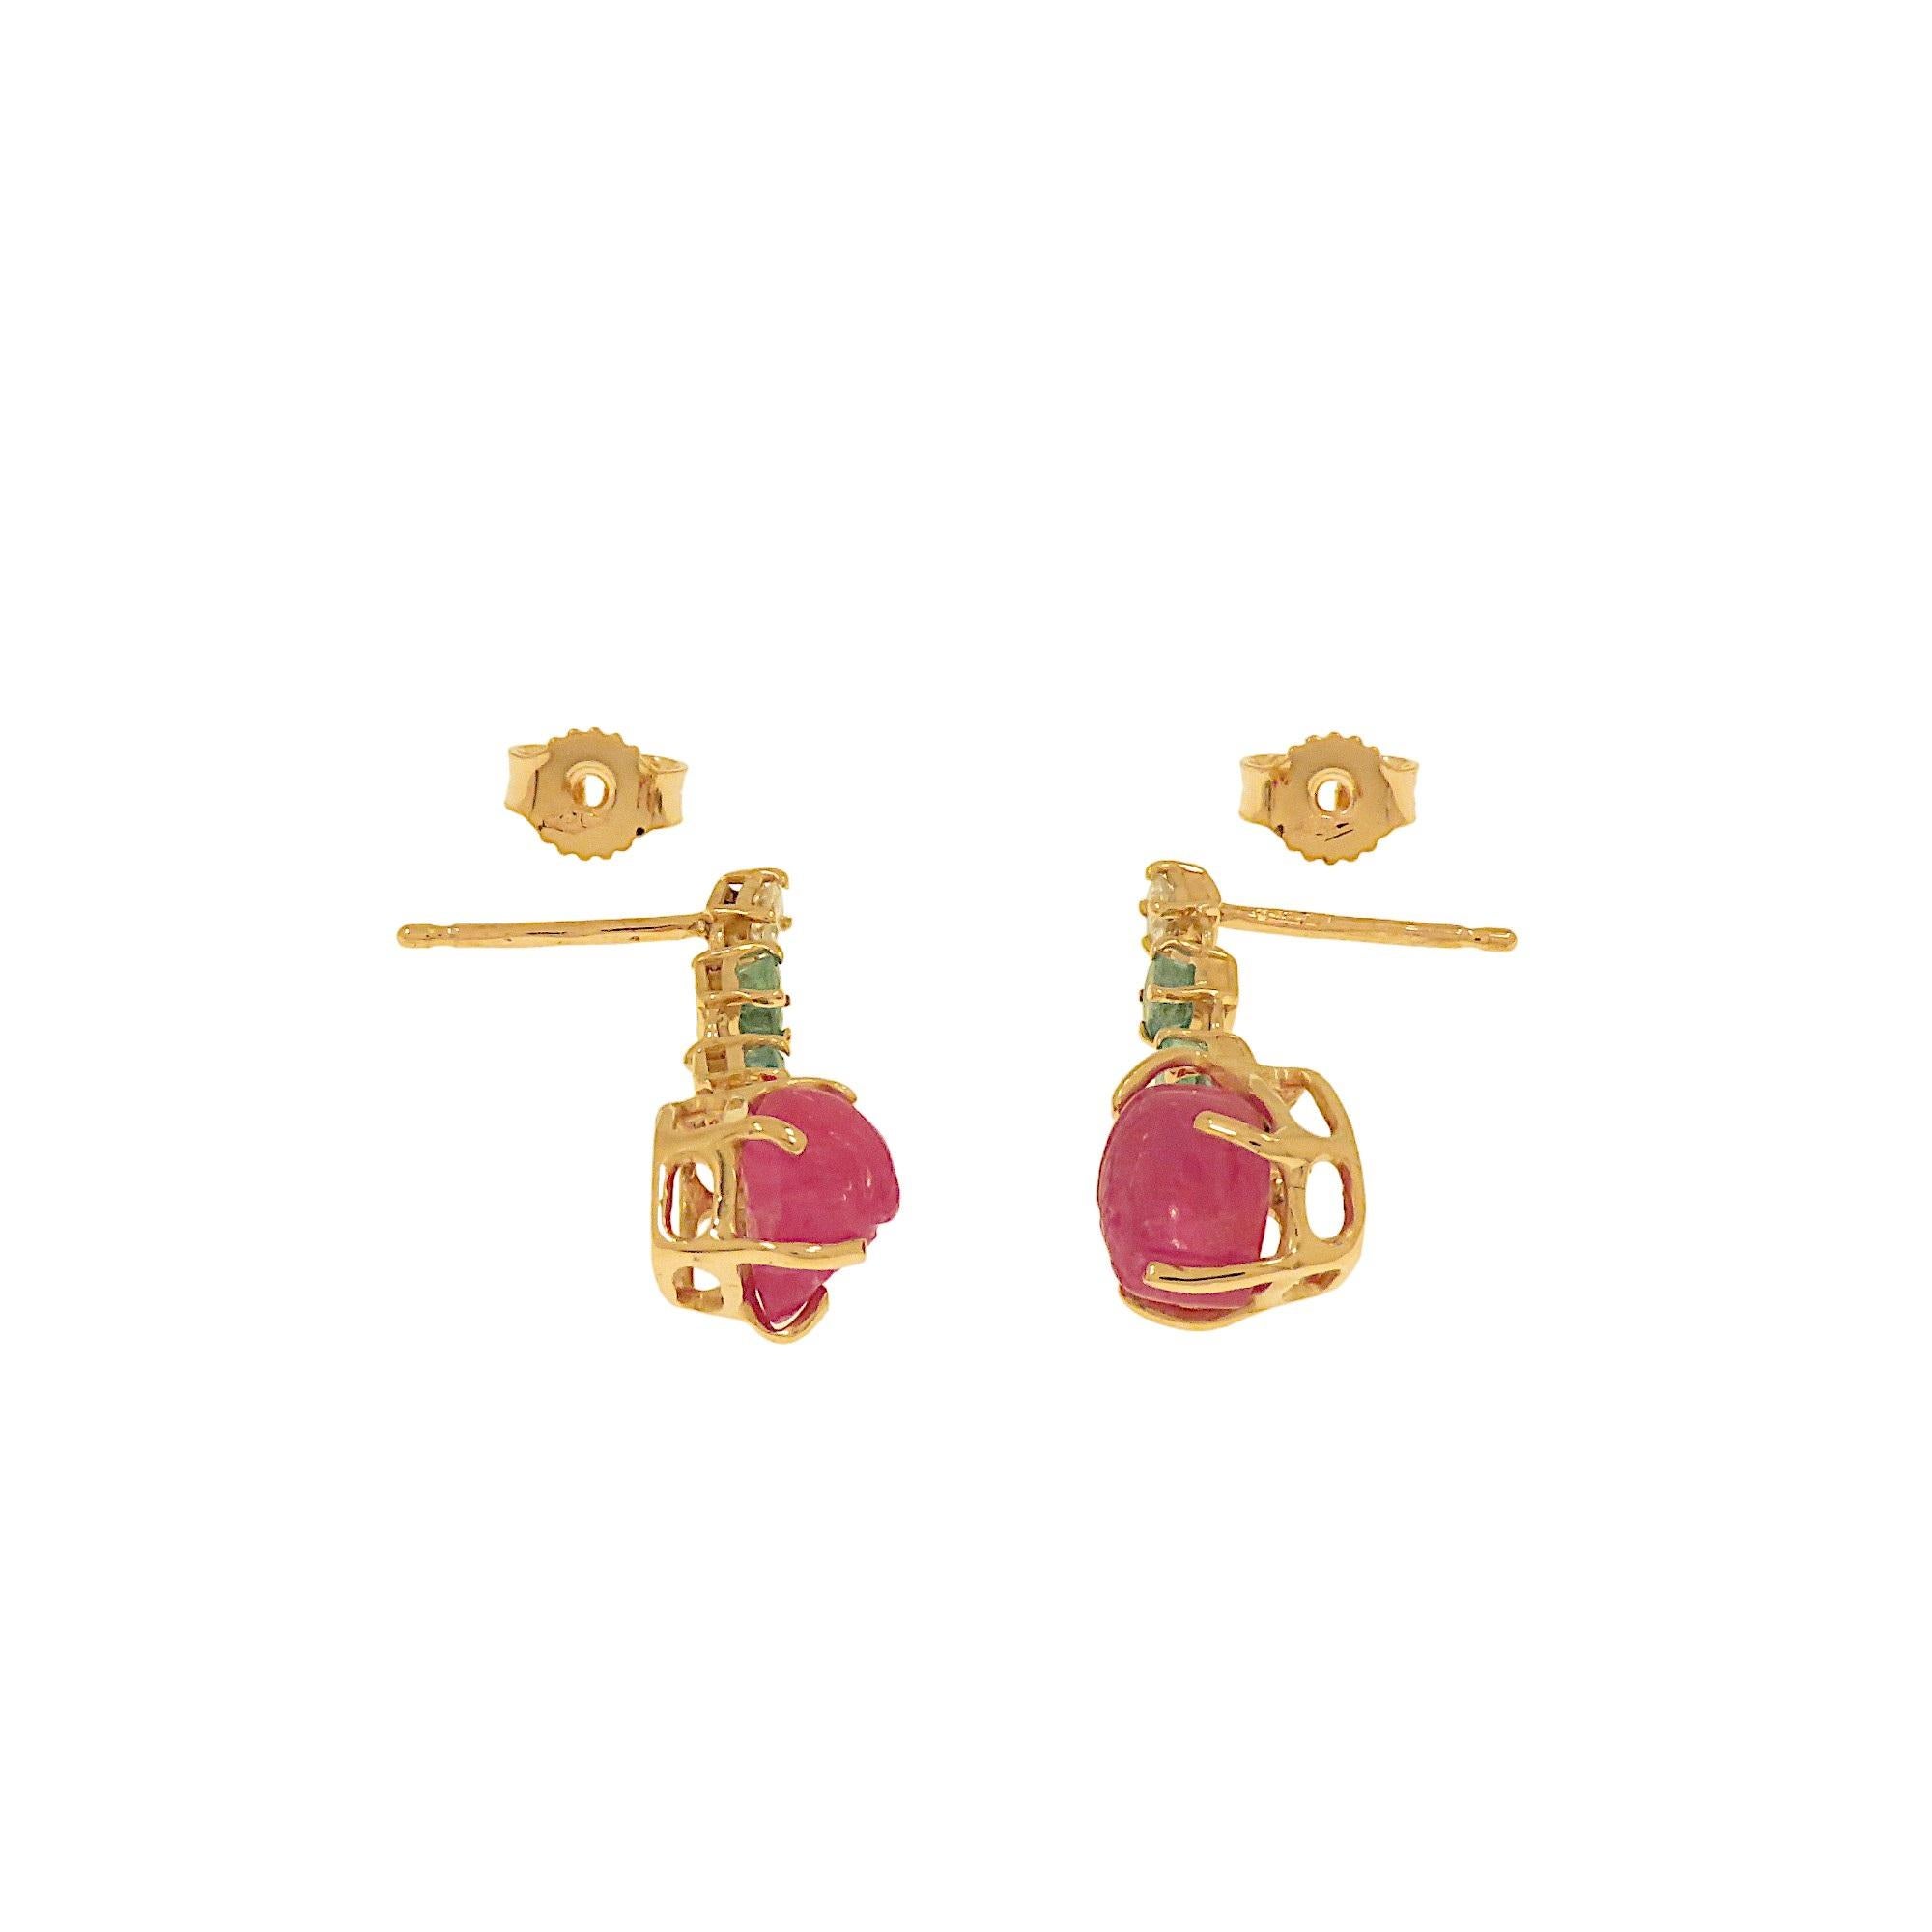 Taille mixte Botta gioielli orecchini con diamanti rubini e smeraldi en Oro rosa en vente